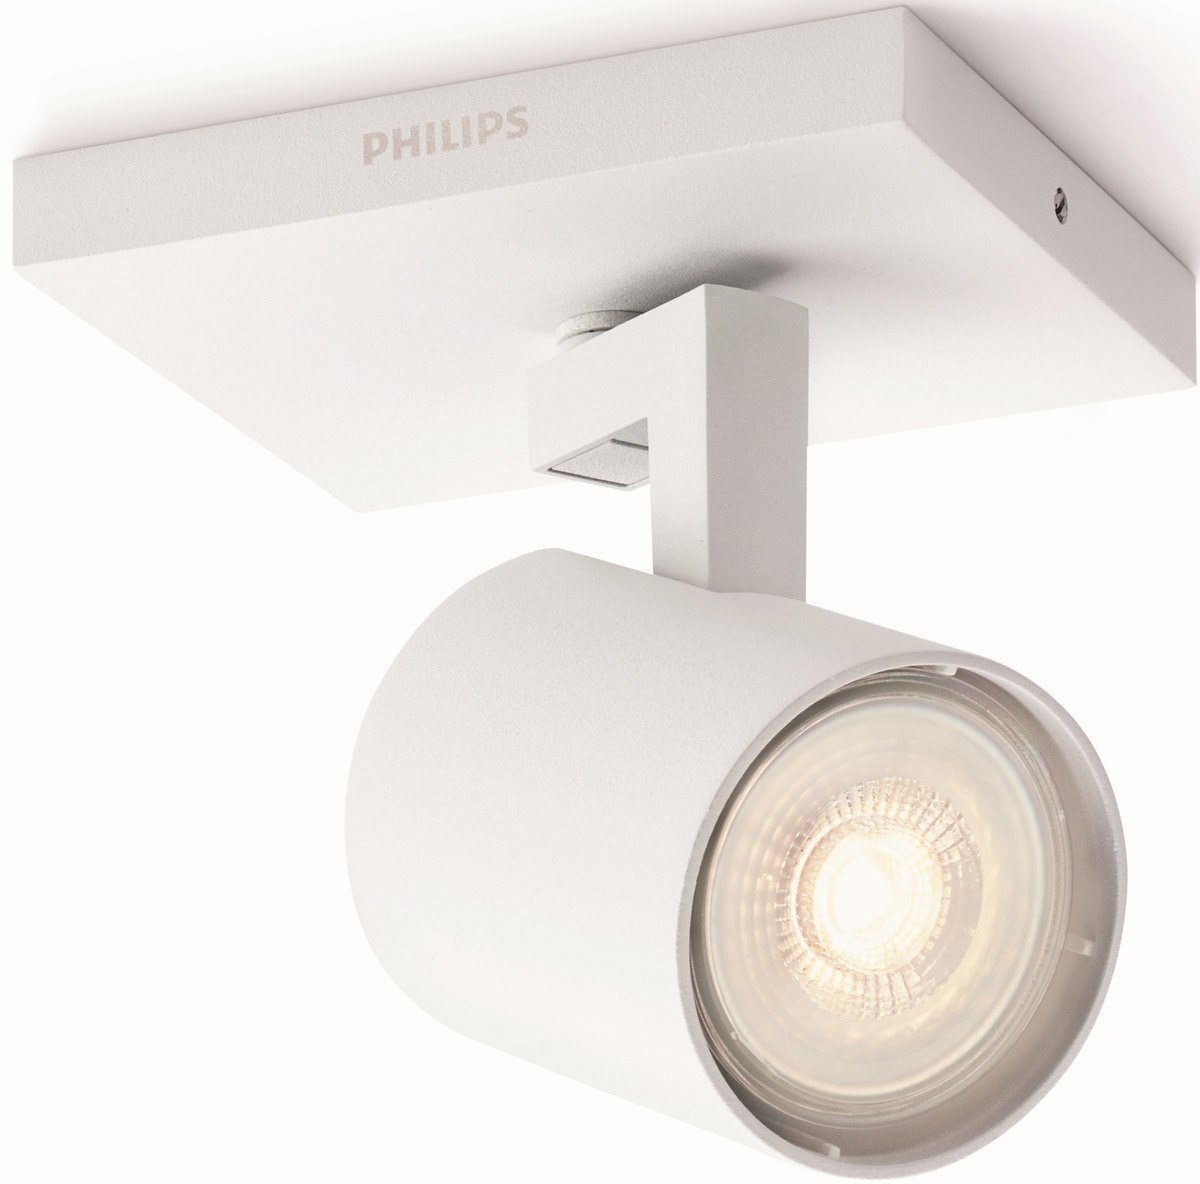 Philips Deckenspot Runner, LED wechselbar, Warmweiß, myLiving LED Spot 1flg. 230lm, Weiß | Deckenstrahler